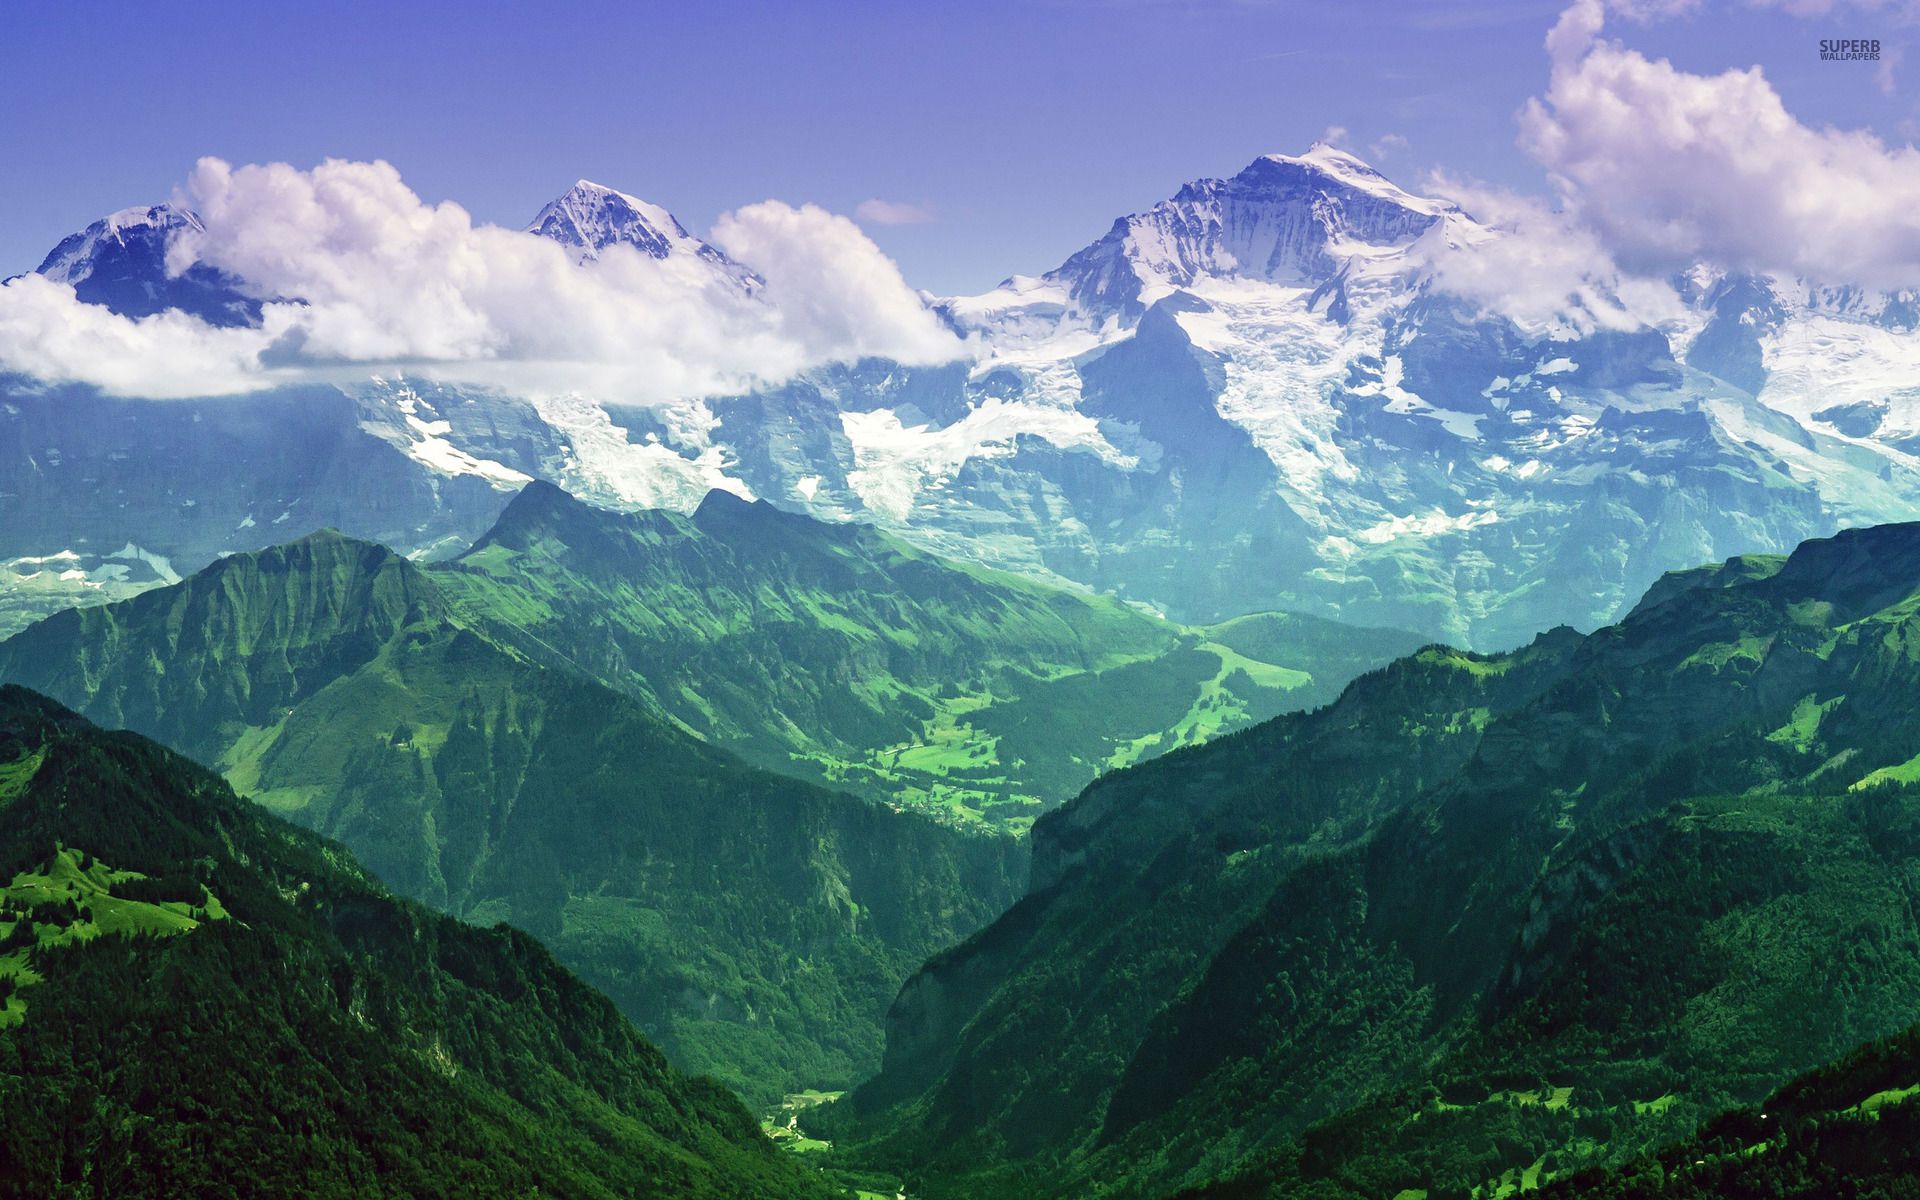 Jungfrau, Bernese Alps, Switzerland wallpaper - Nature wallpapers